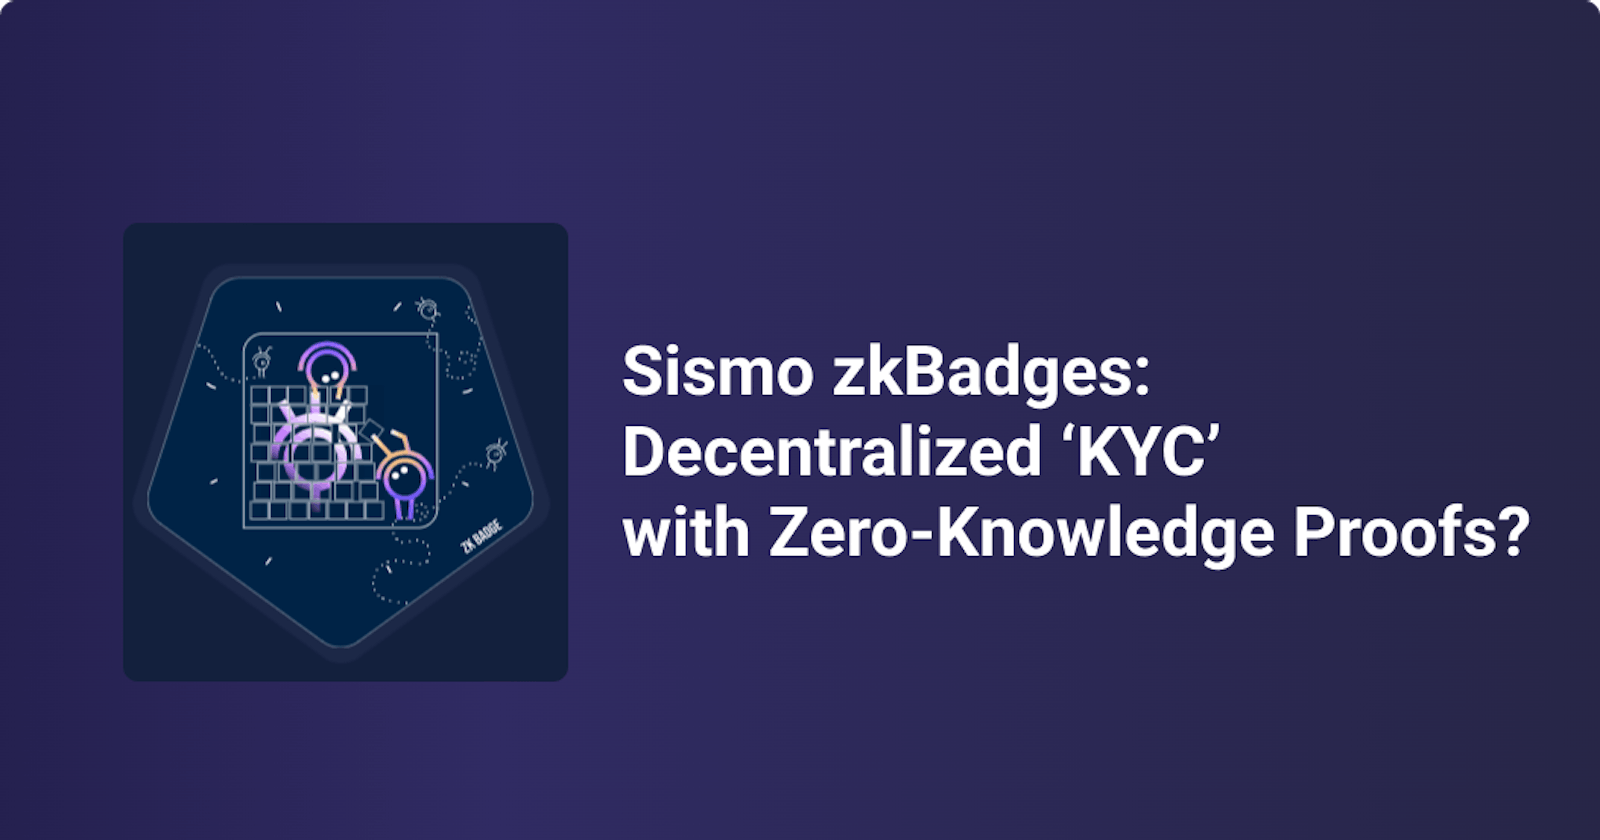 Sismo zkBadges: Decentralized ‘KYC’ with Zero-Knowledge Proofs?